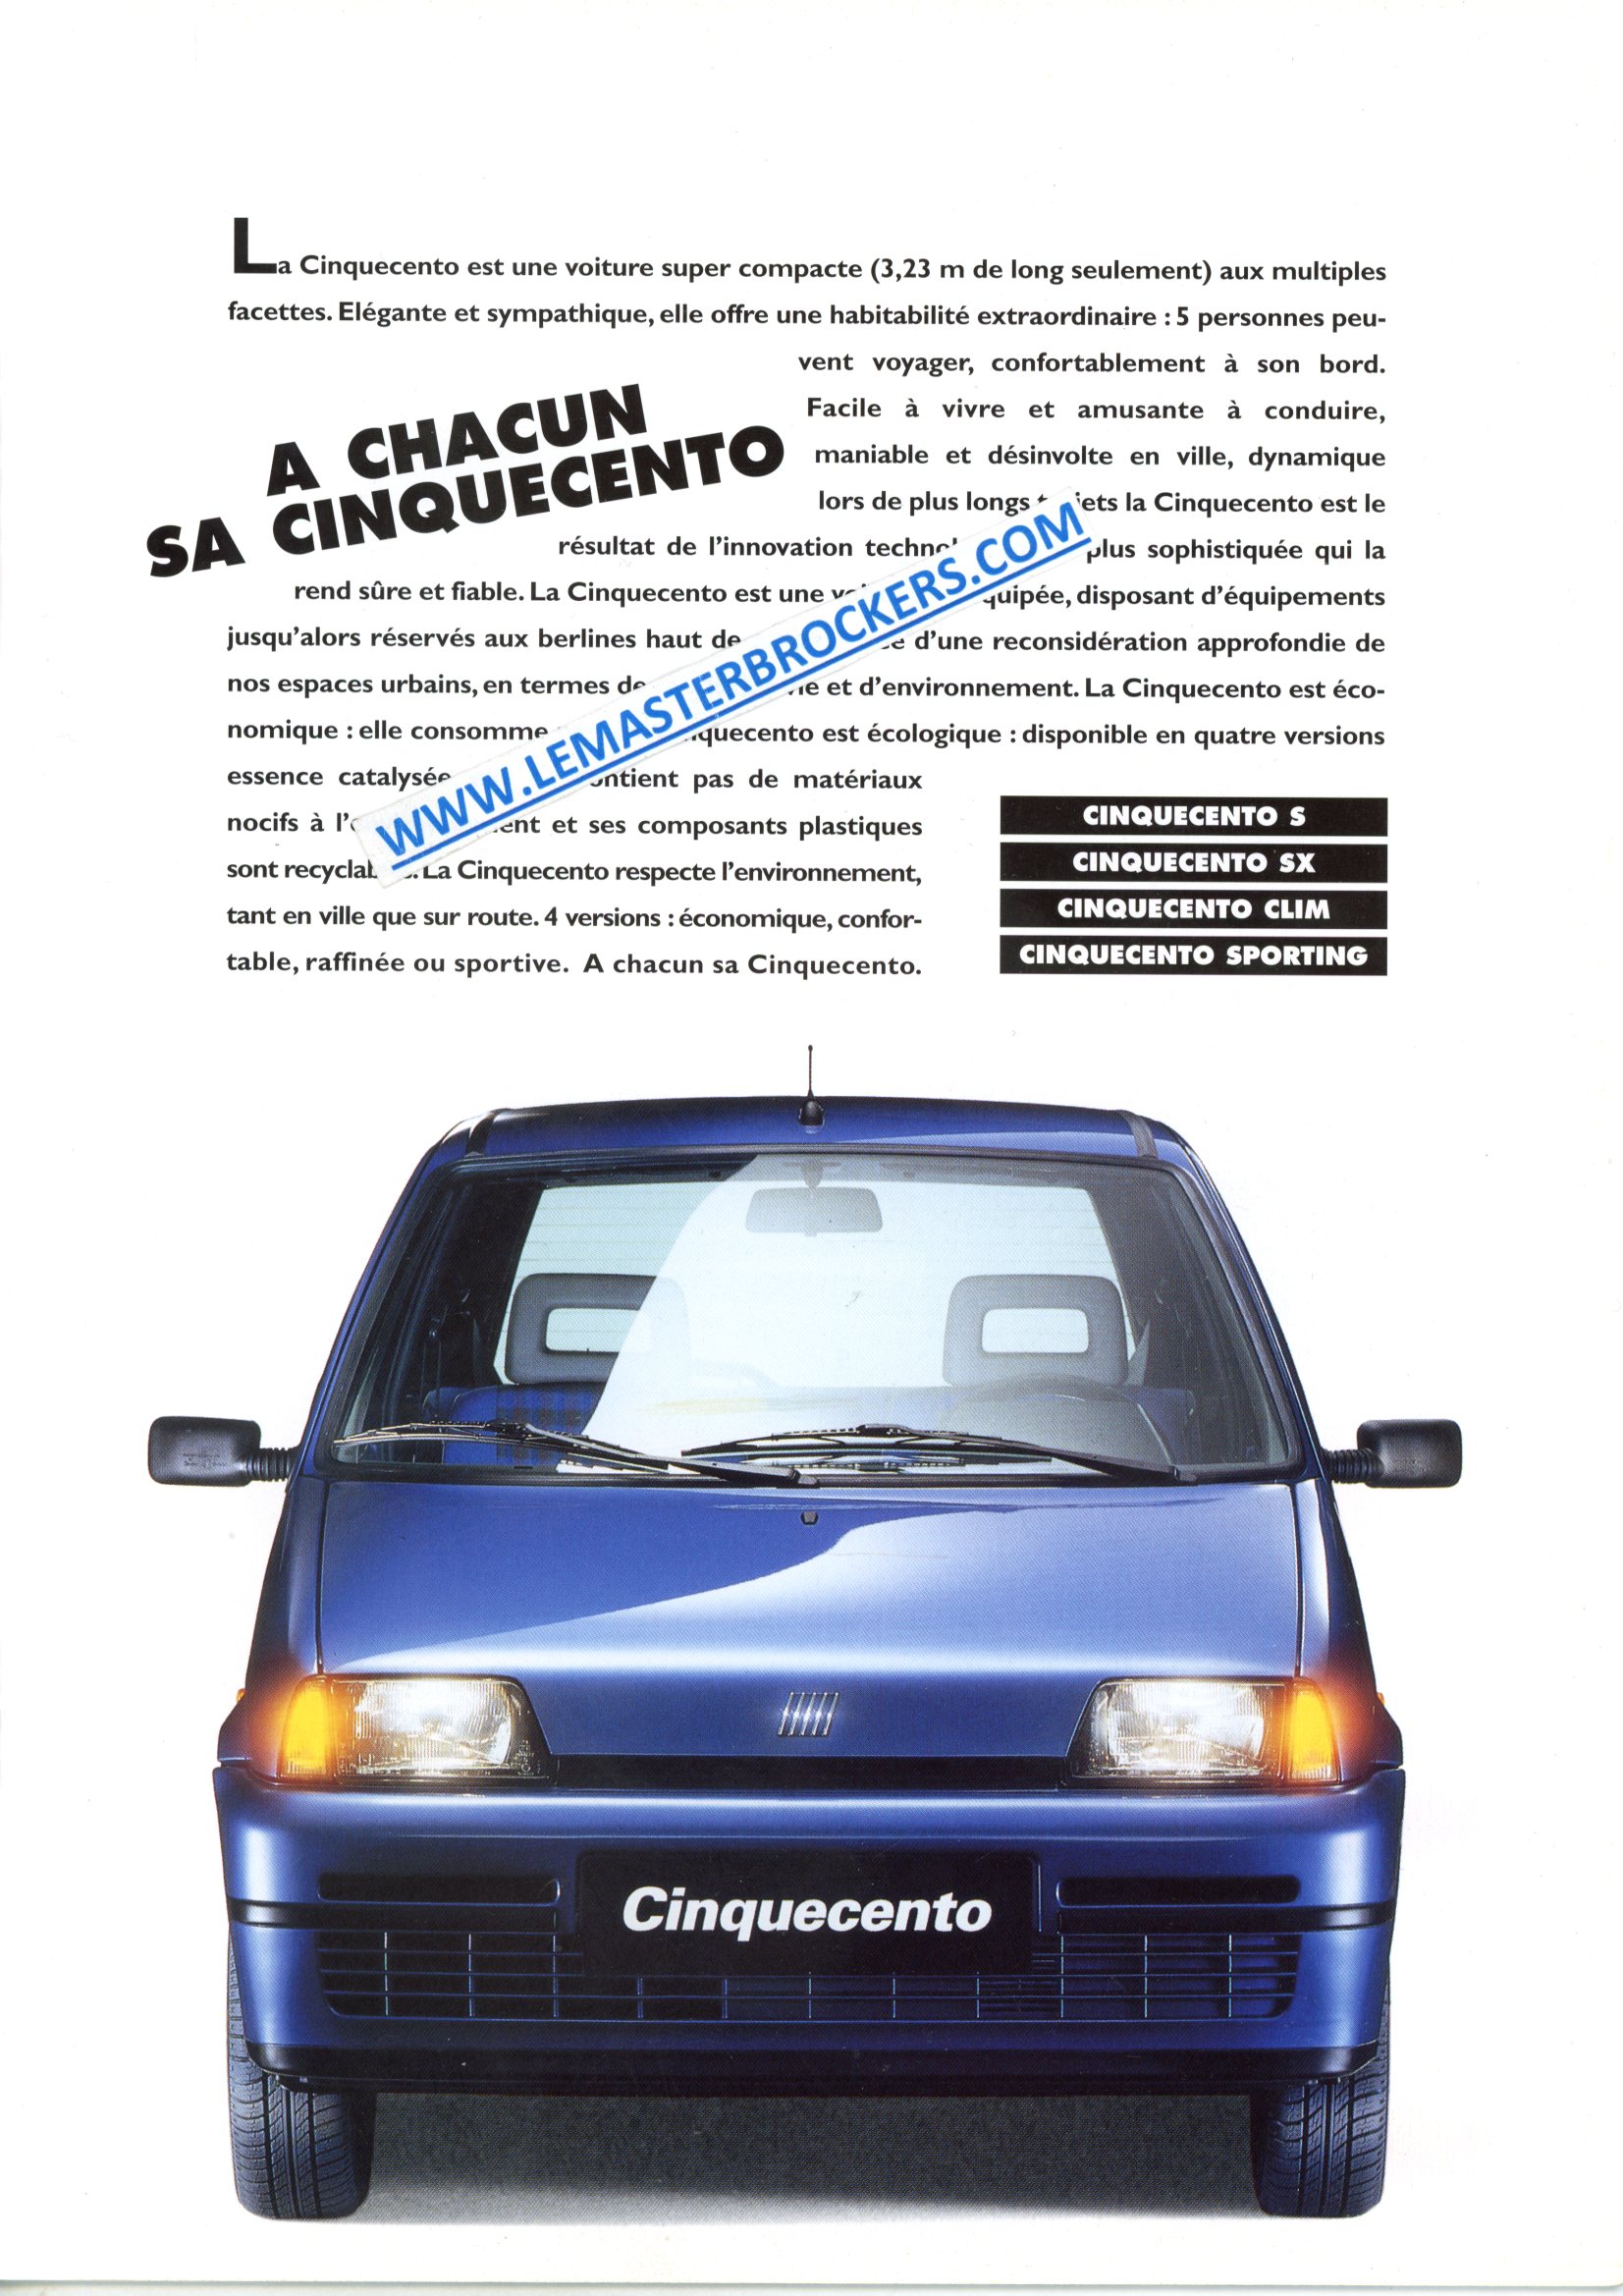 FIAT CINQUECENTO SPORTING S SX CLIM 1995